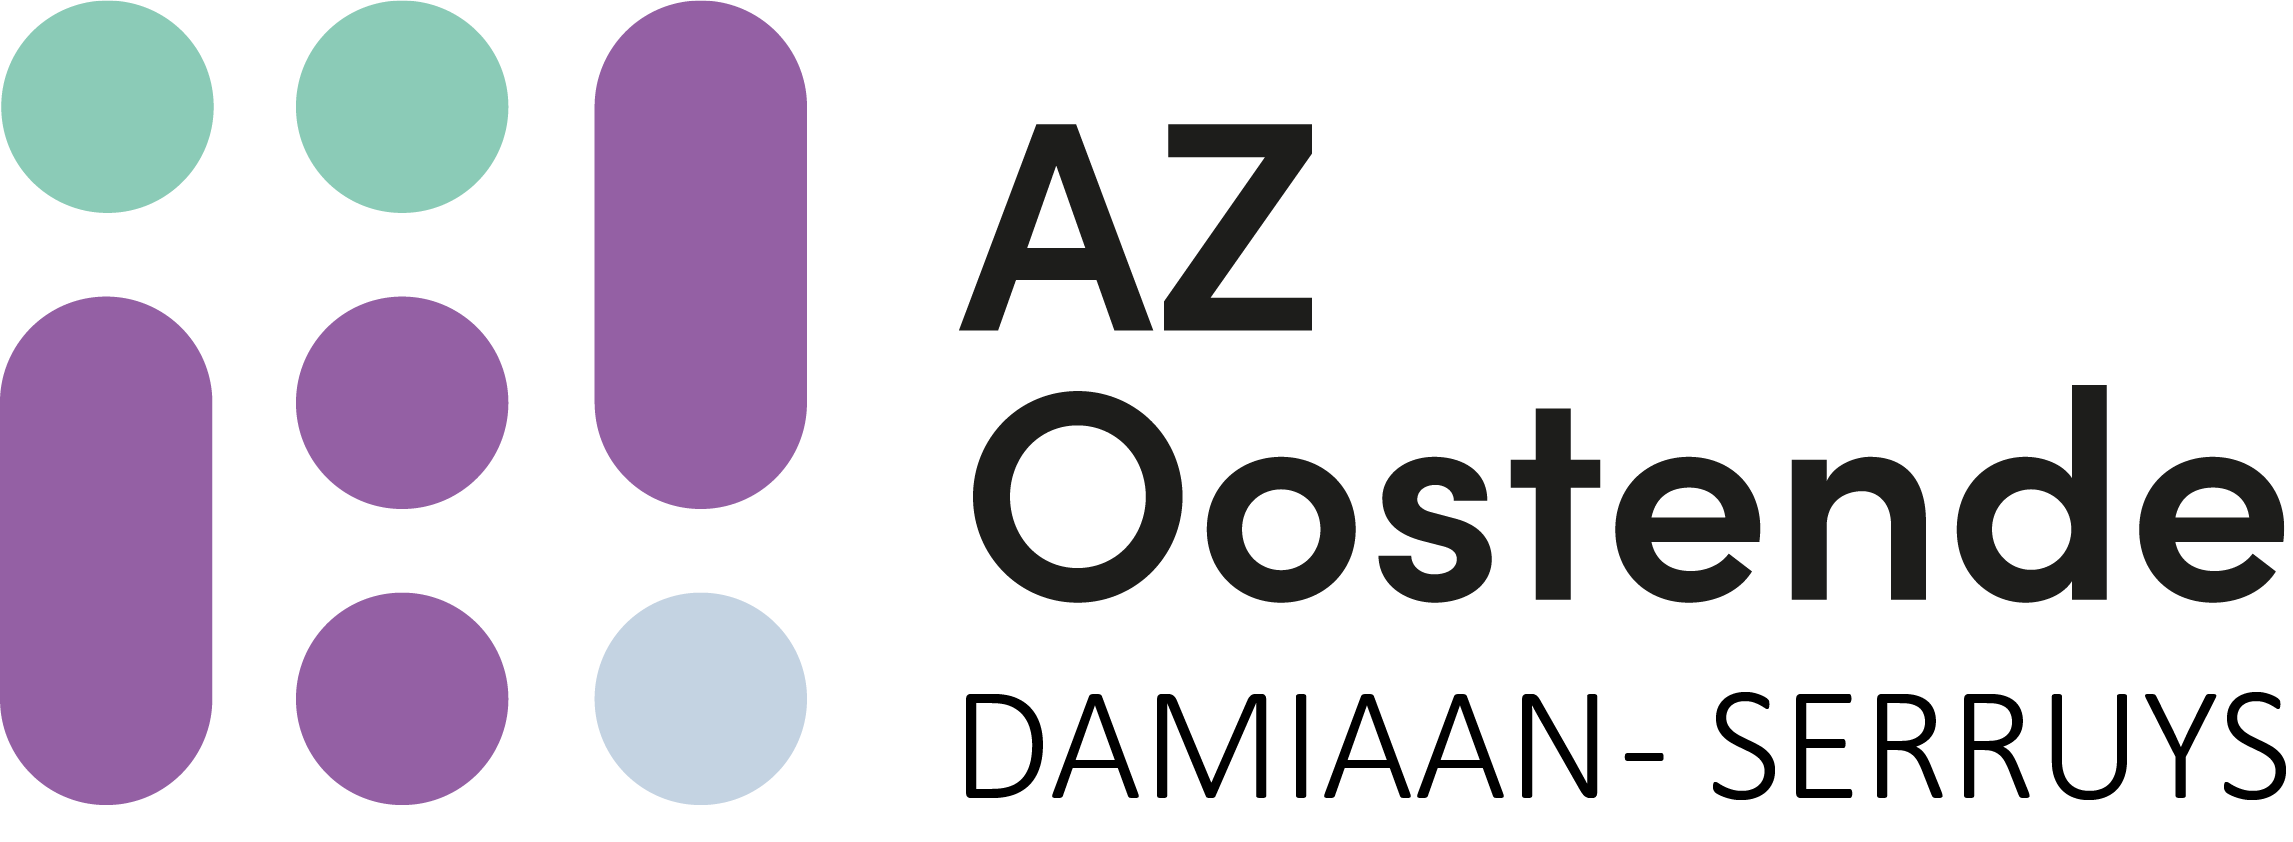 L’AZ Oostende améliore l’efficacité de son matériel médical grâce à la géolocalisation des actifs de PHI DATA et de Blyott